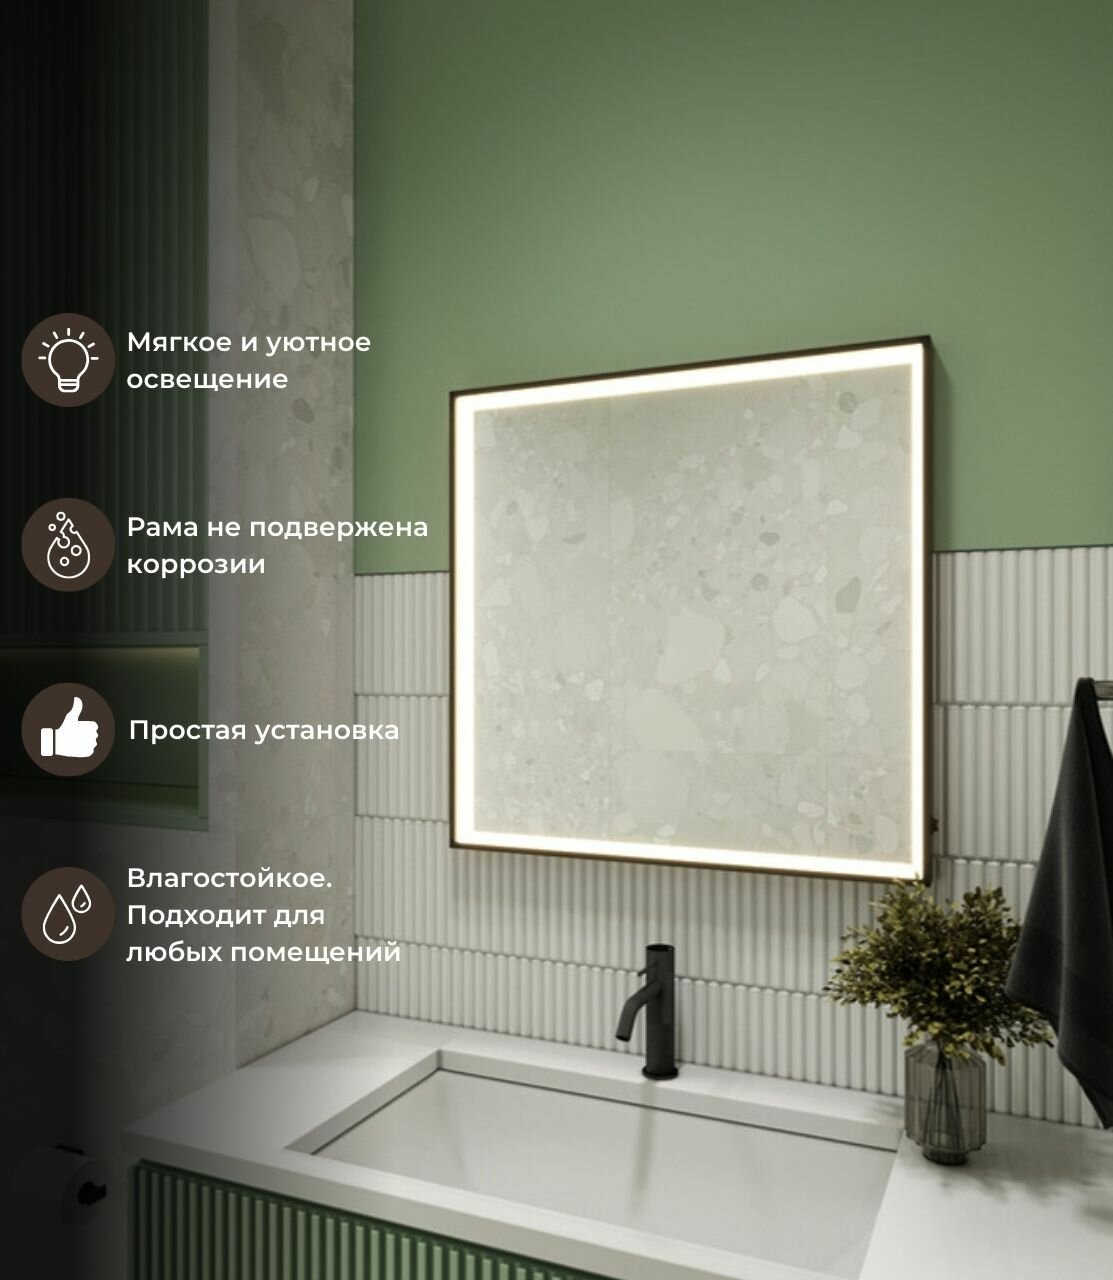 Зеркало с LED подсветкой в алюминиевой раме c клавишным датчиком в ванную комнату для размещения над раковиной в ванной комнате.